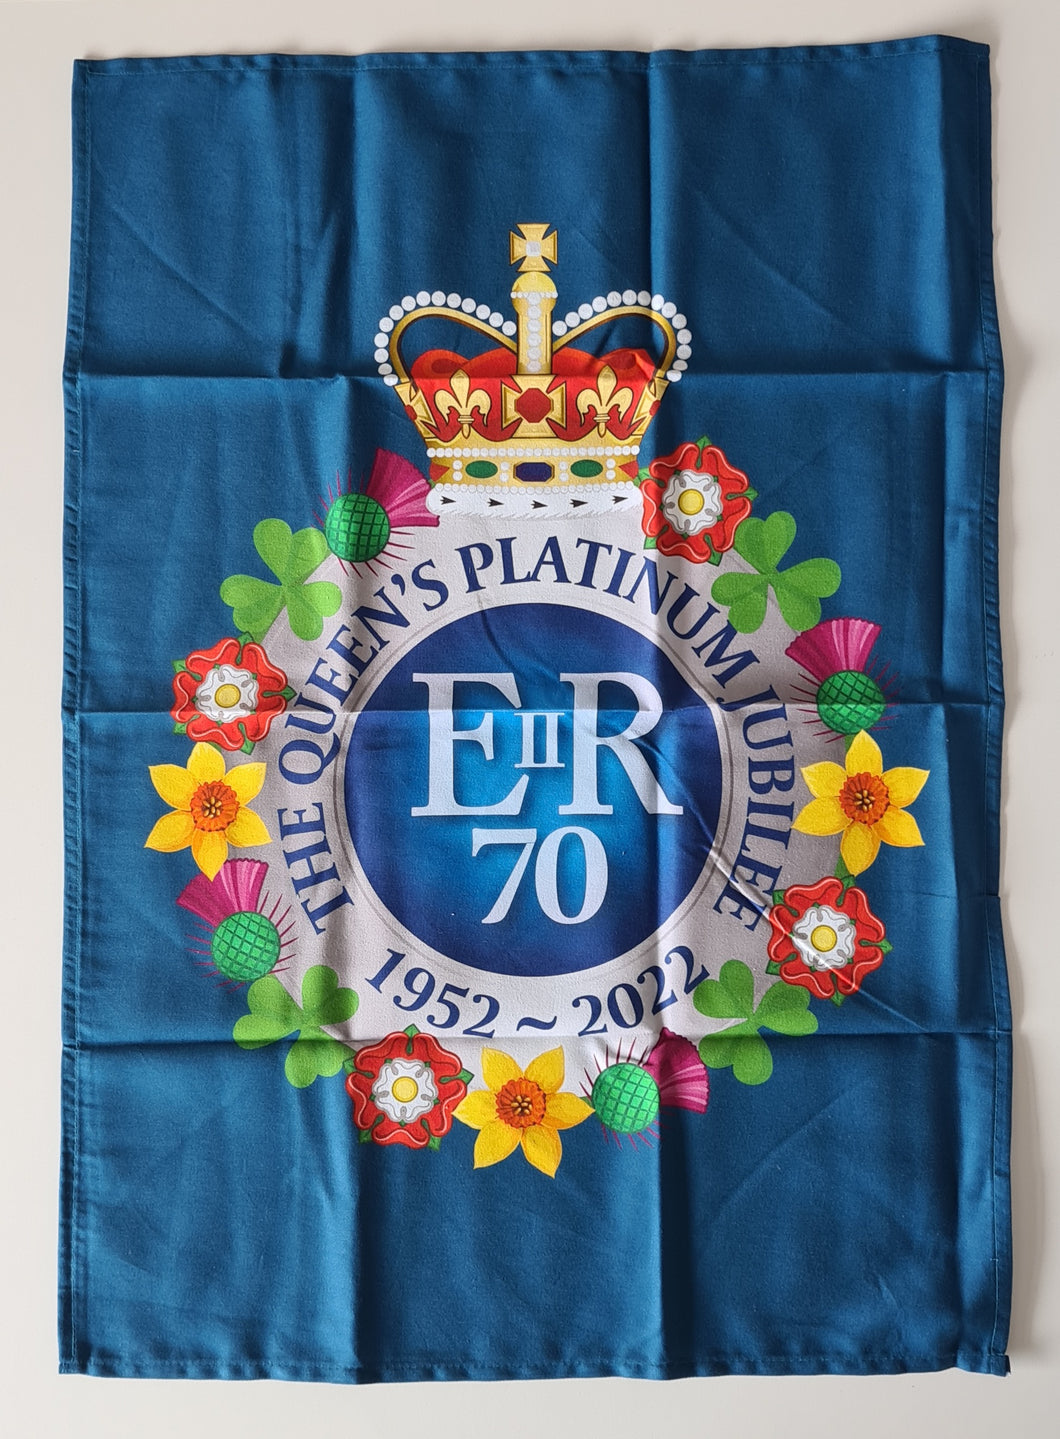 The Queen's Platinum Jubilee Commemorative Tea Towel